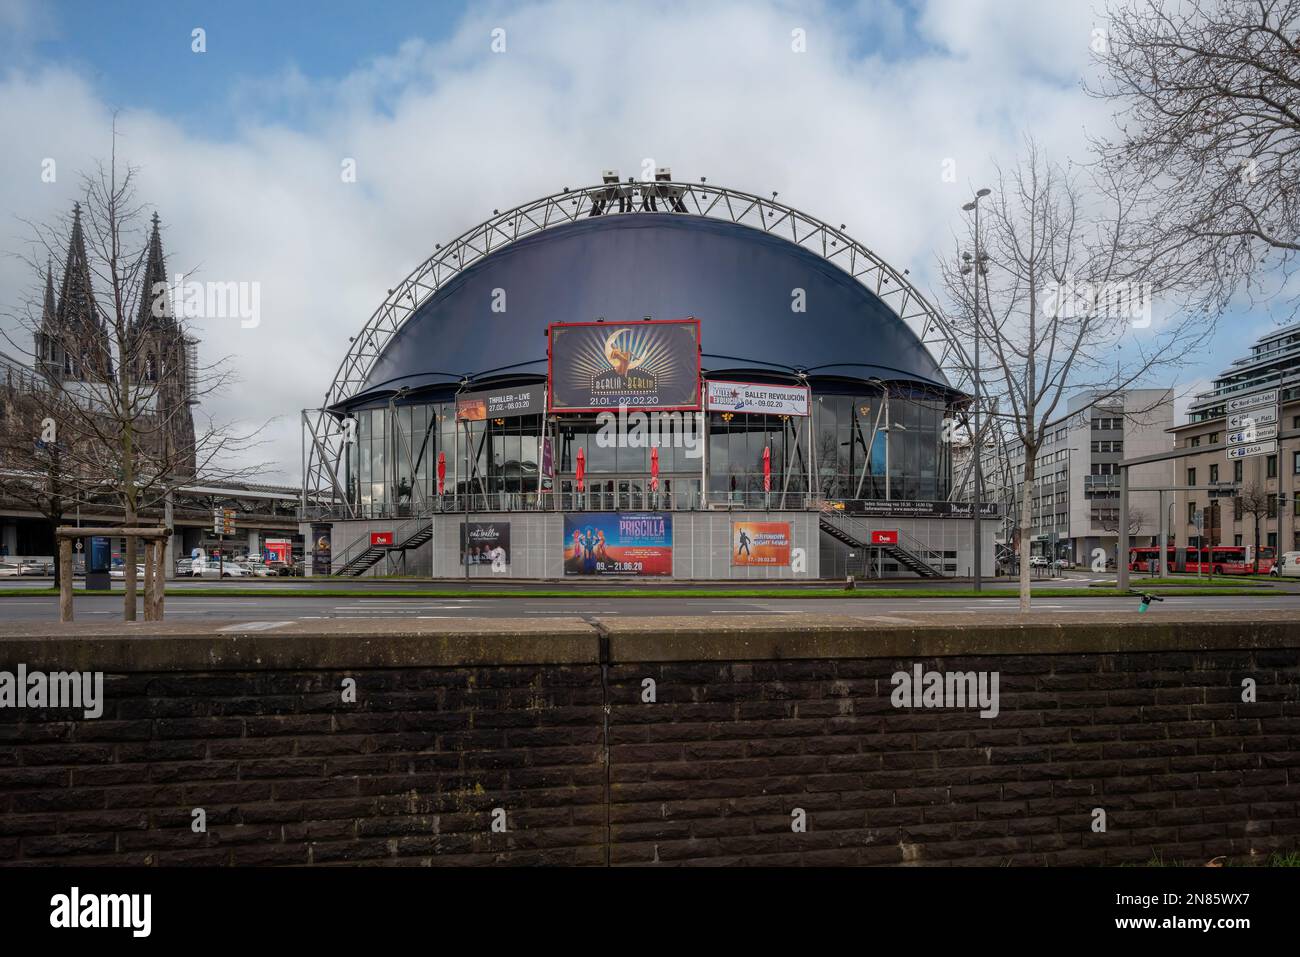 Théâtre musical Dome - Cologne, Allemagne Banque D'Images